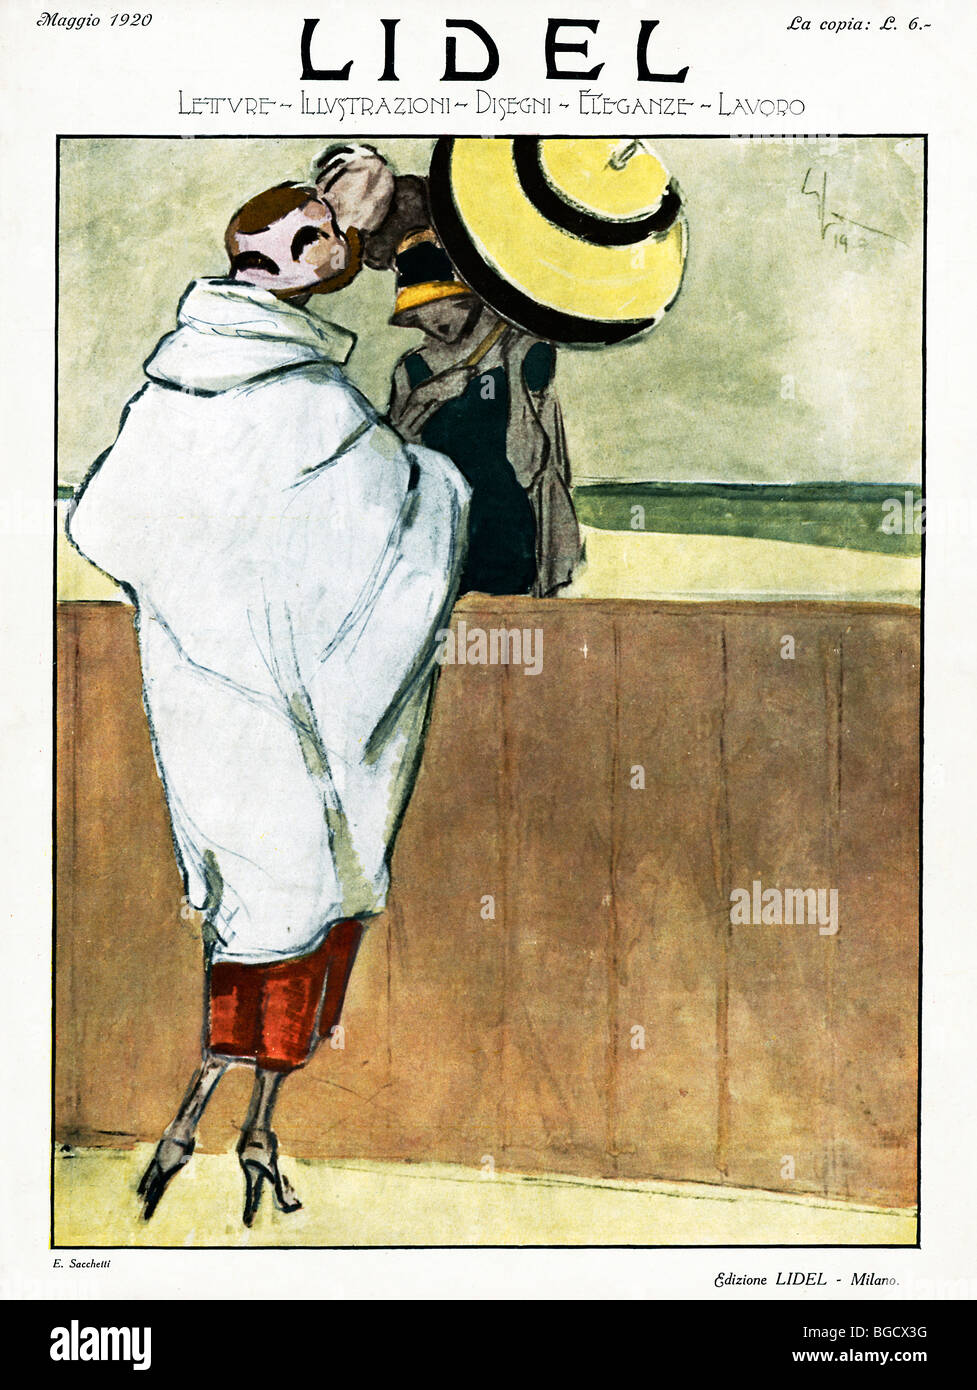 Lidel, 1920 coperchio della moda italiana e lifestyle magazine pubblicato a Milano, elegante signore in vacanza Foto Stock